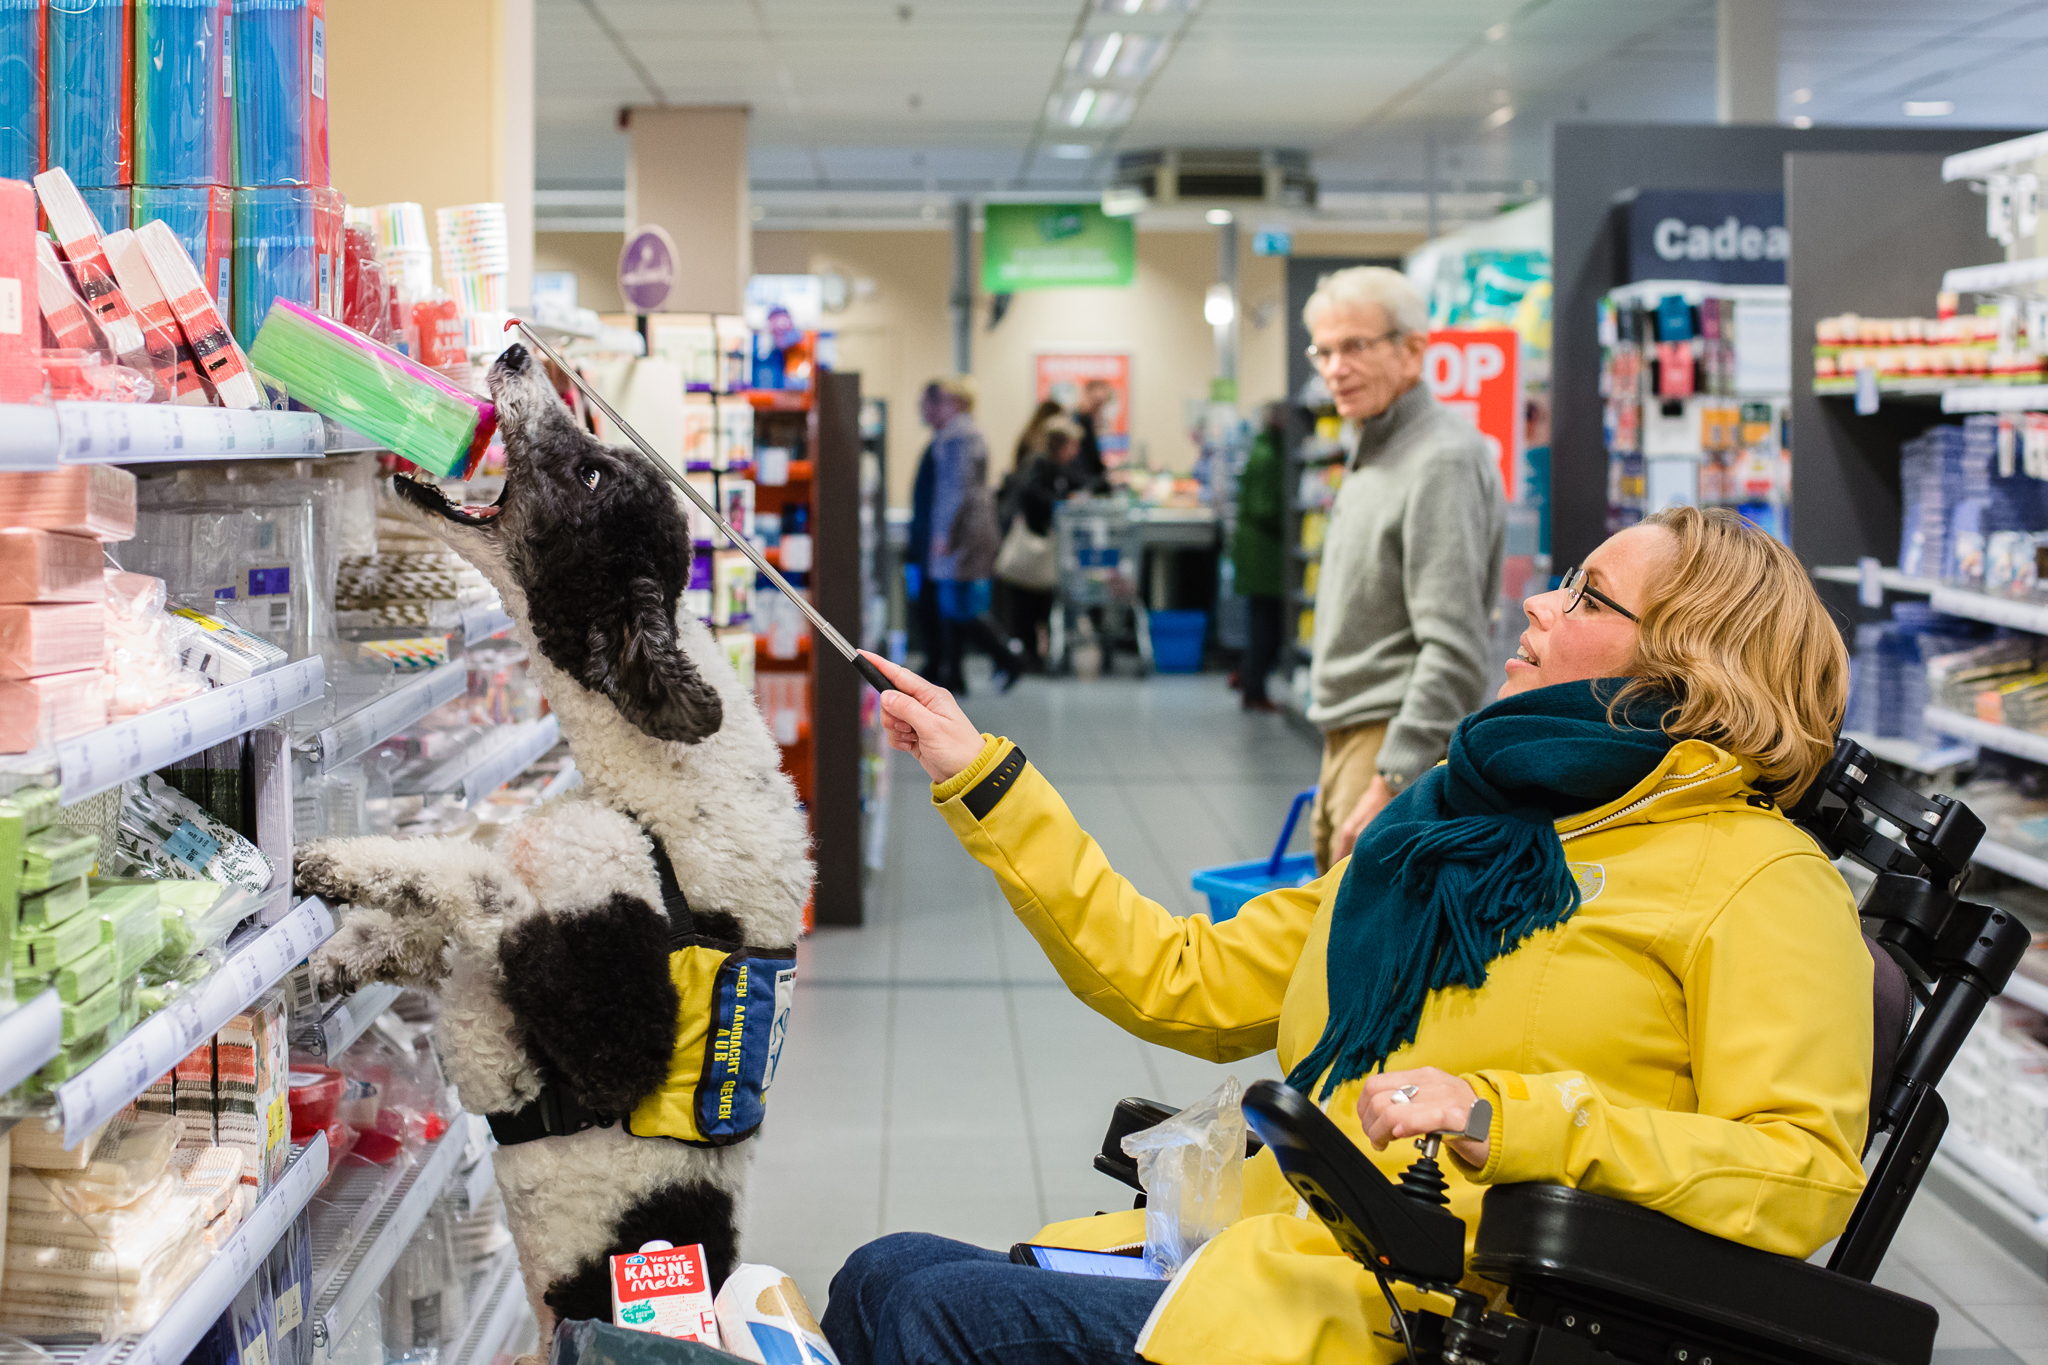 Hulphond helpt met boodschappen doen bij supermarkt van Albert Heijn, fotoproject over hulphonden in Nederland door Maljaars Fotografie